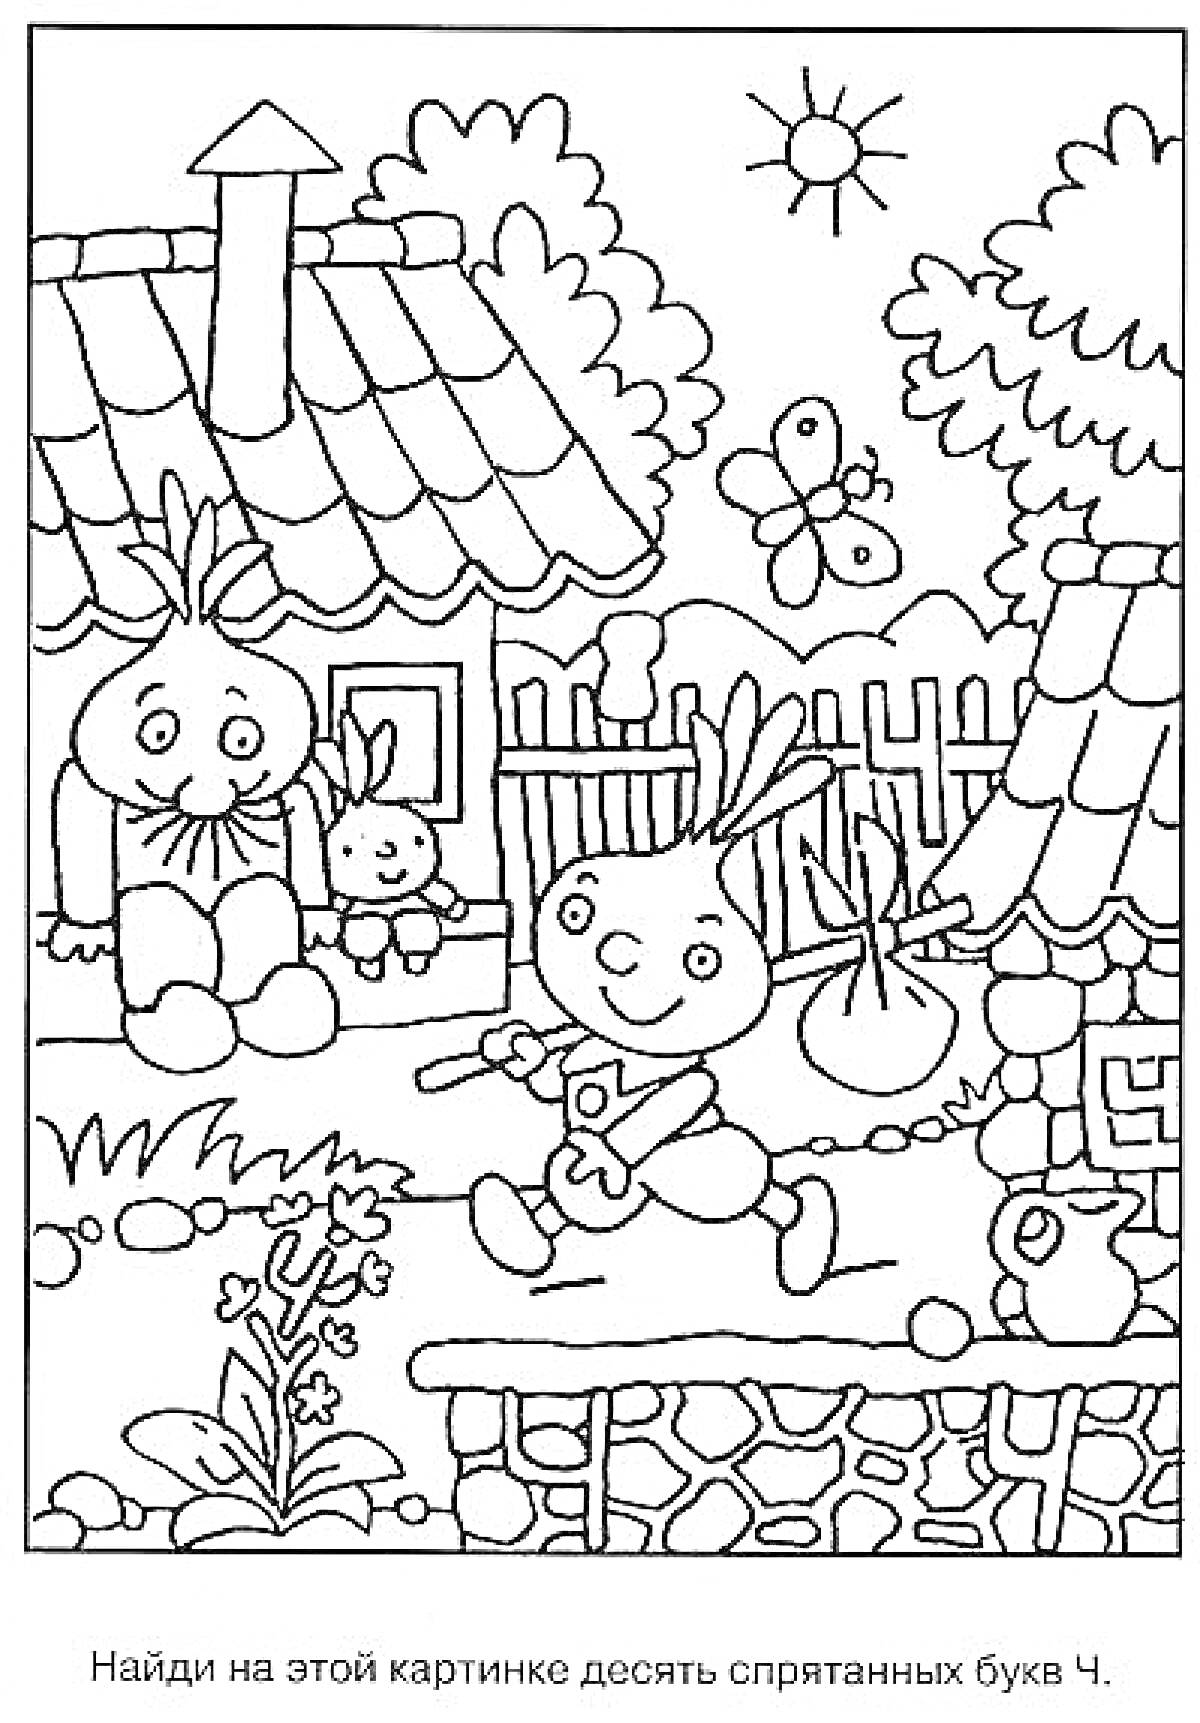 Картинка с домом, забором, деревом, зайцами и бабочкой для поиска буквы Ч